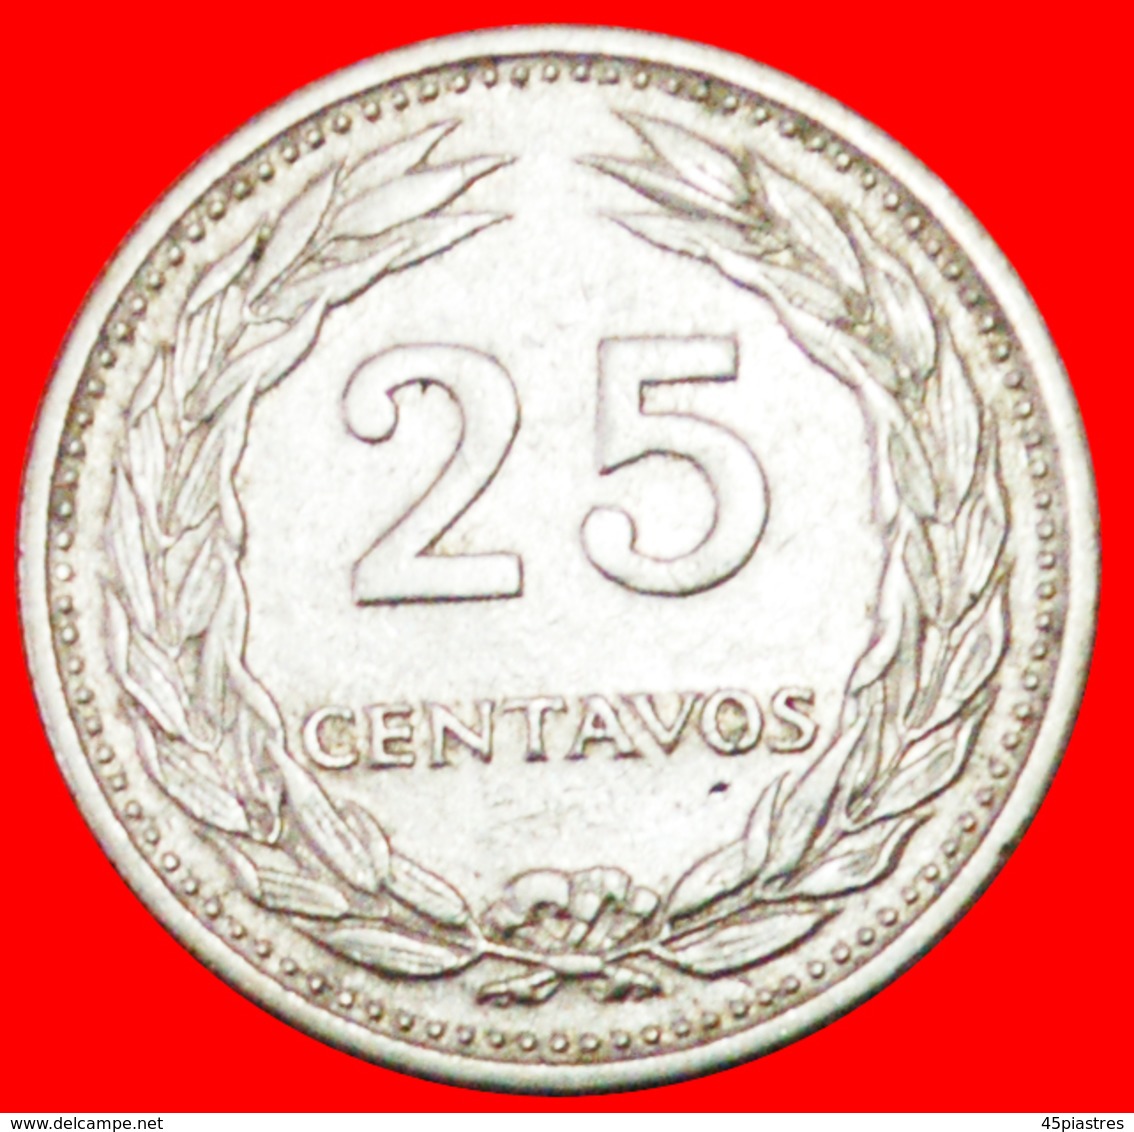 # GREAT BRITAIN (1970-1977): EL SALVADOR ★ 25 CENTAVOS 1970! LOW START ★ NO RESERVE! - Salvador